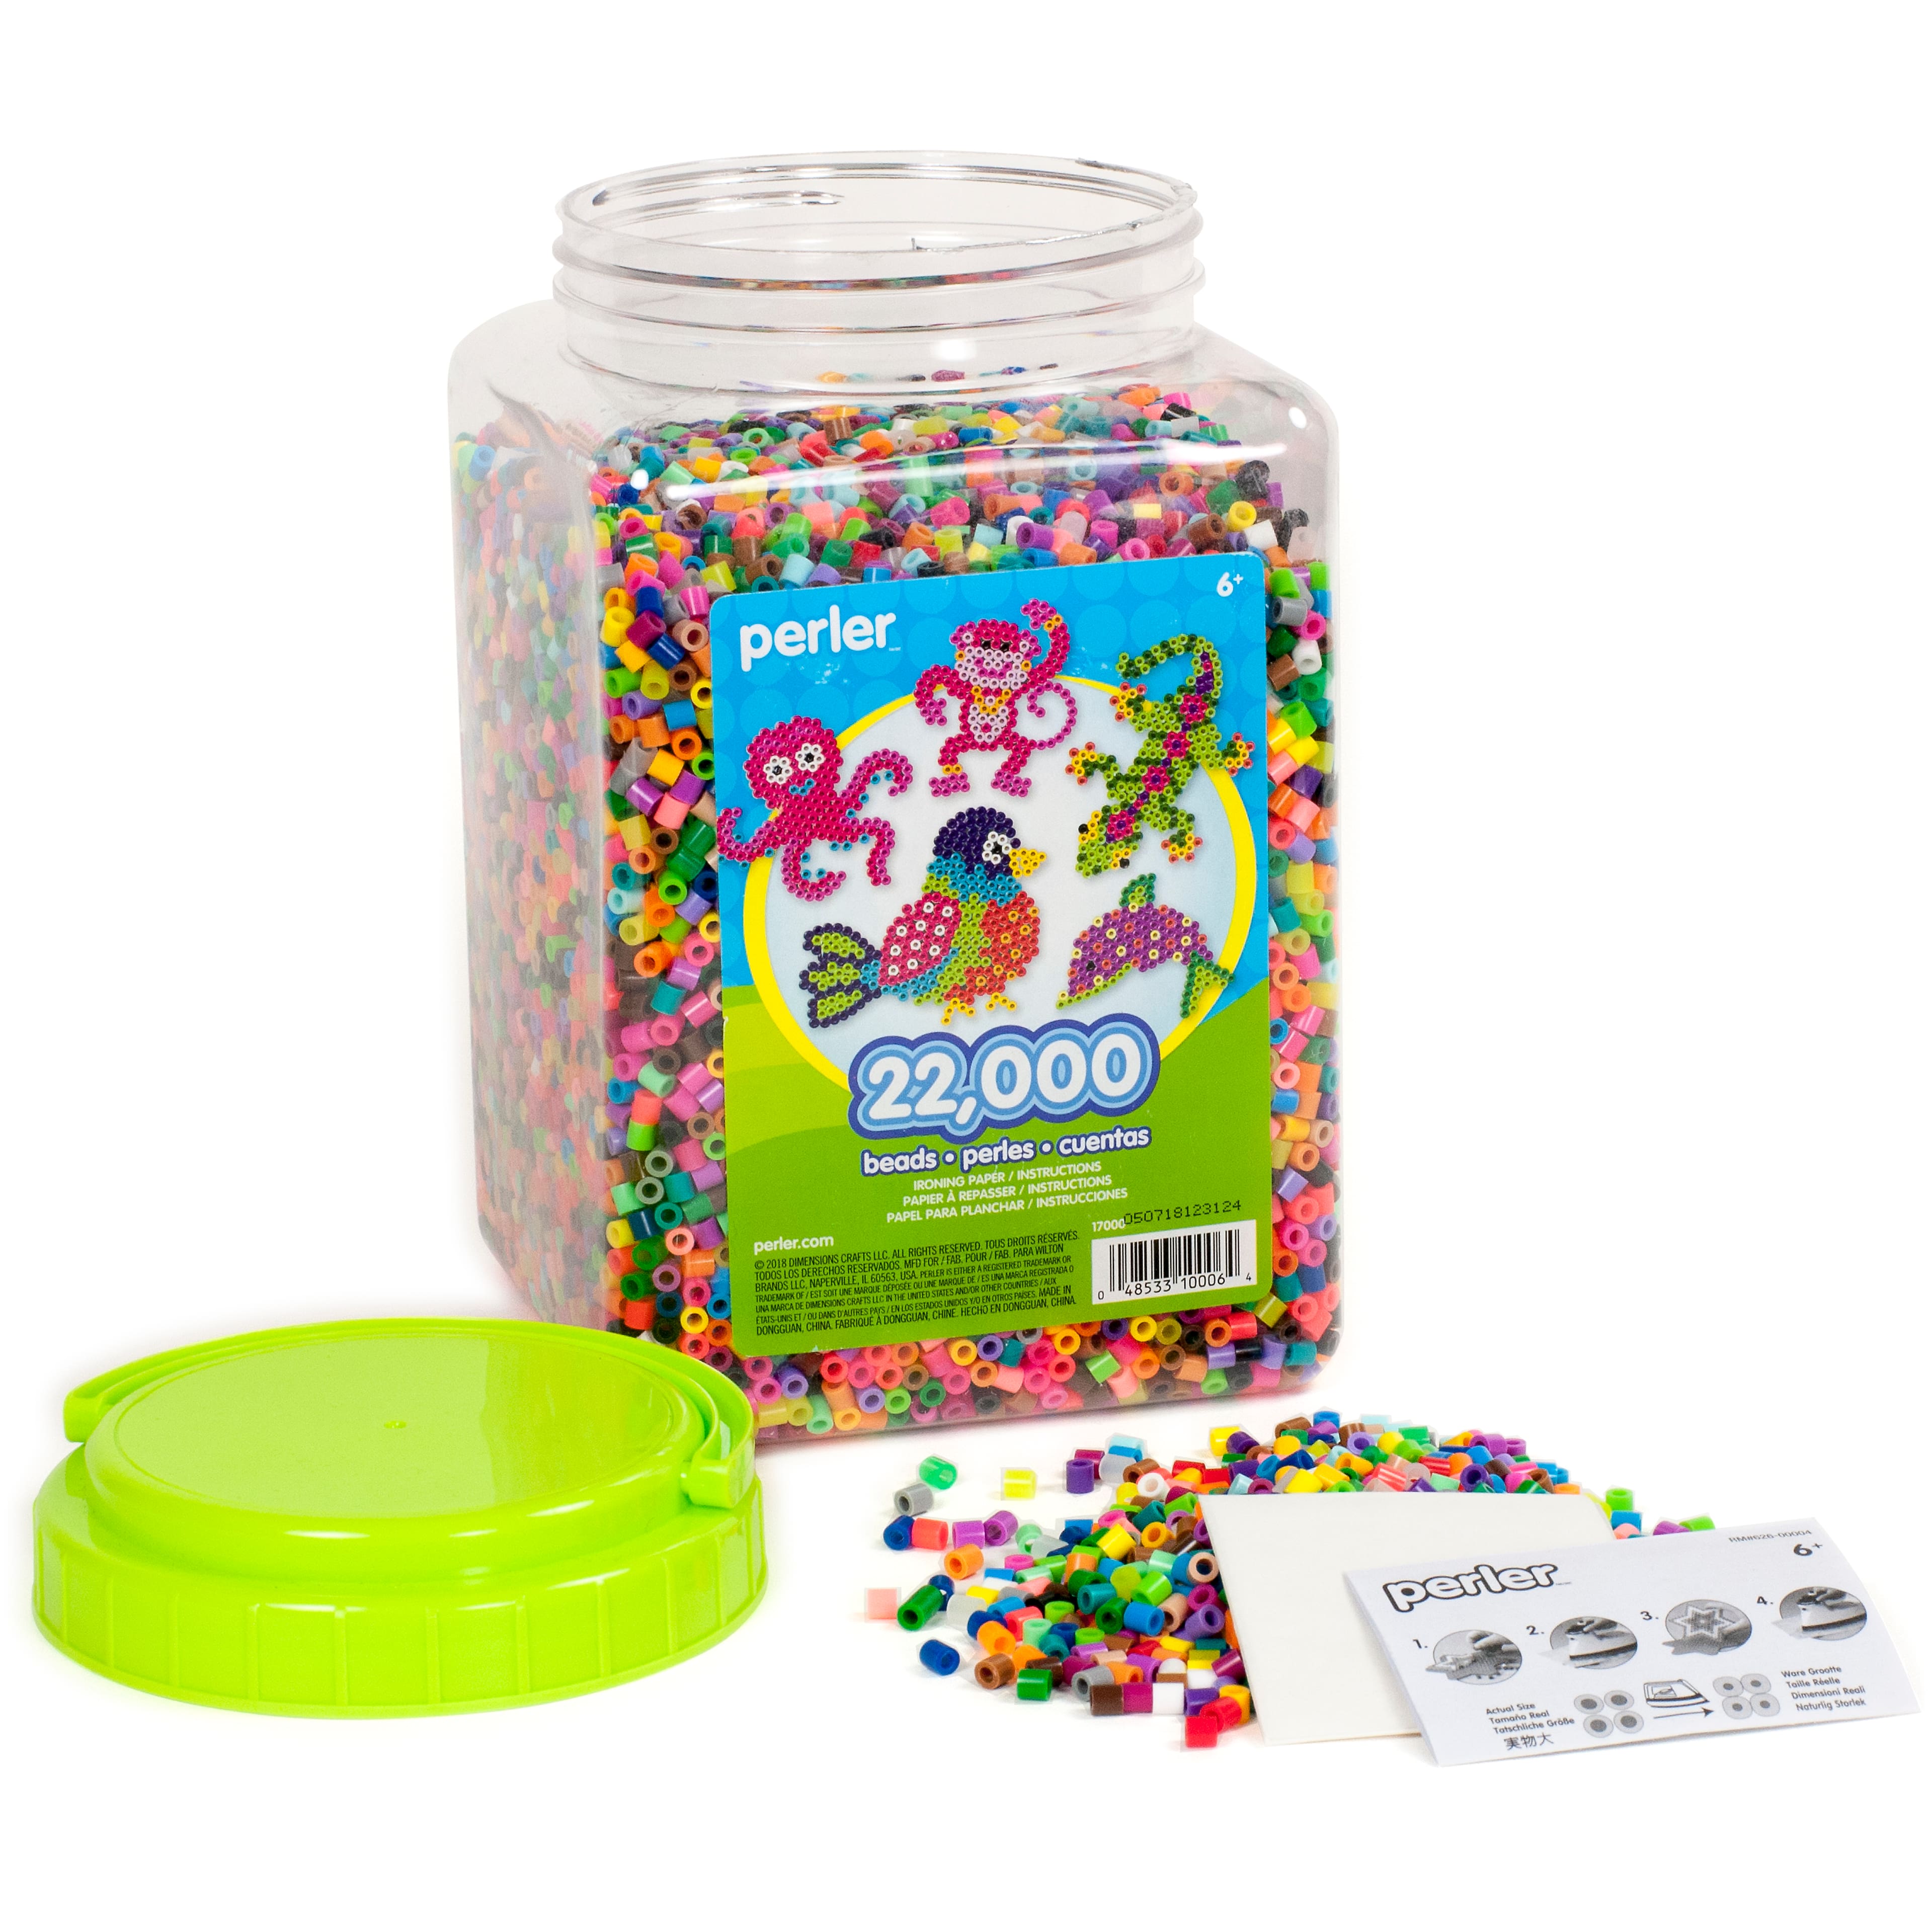 Perler&#xAE; 22,000 Beads Multi-Mix Jar